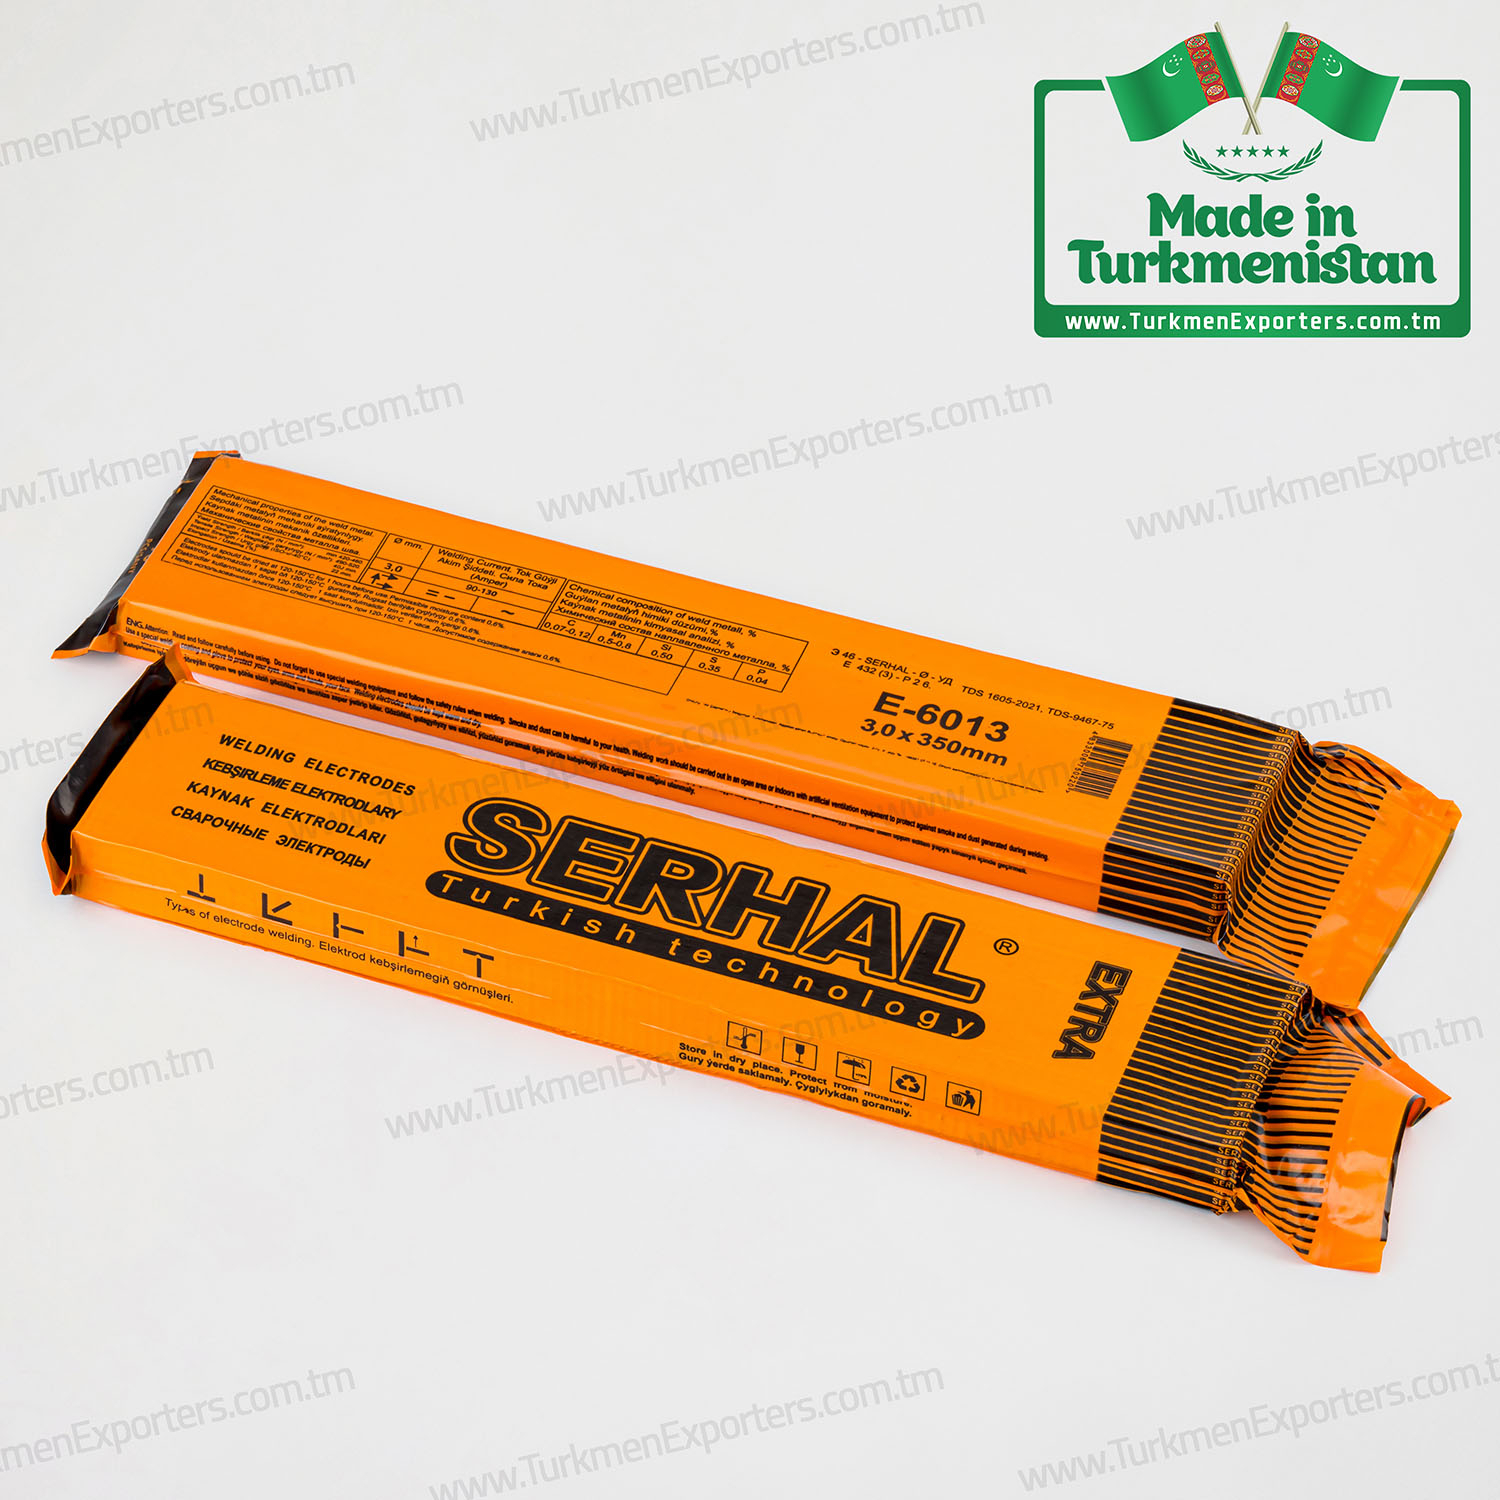 Serhal welding electrode E-6013 | Ak Cheshme economic society